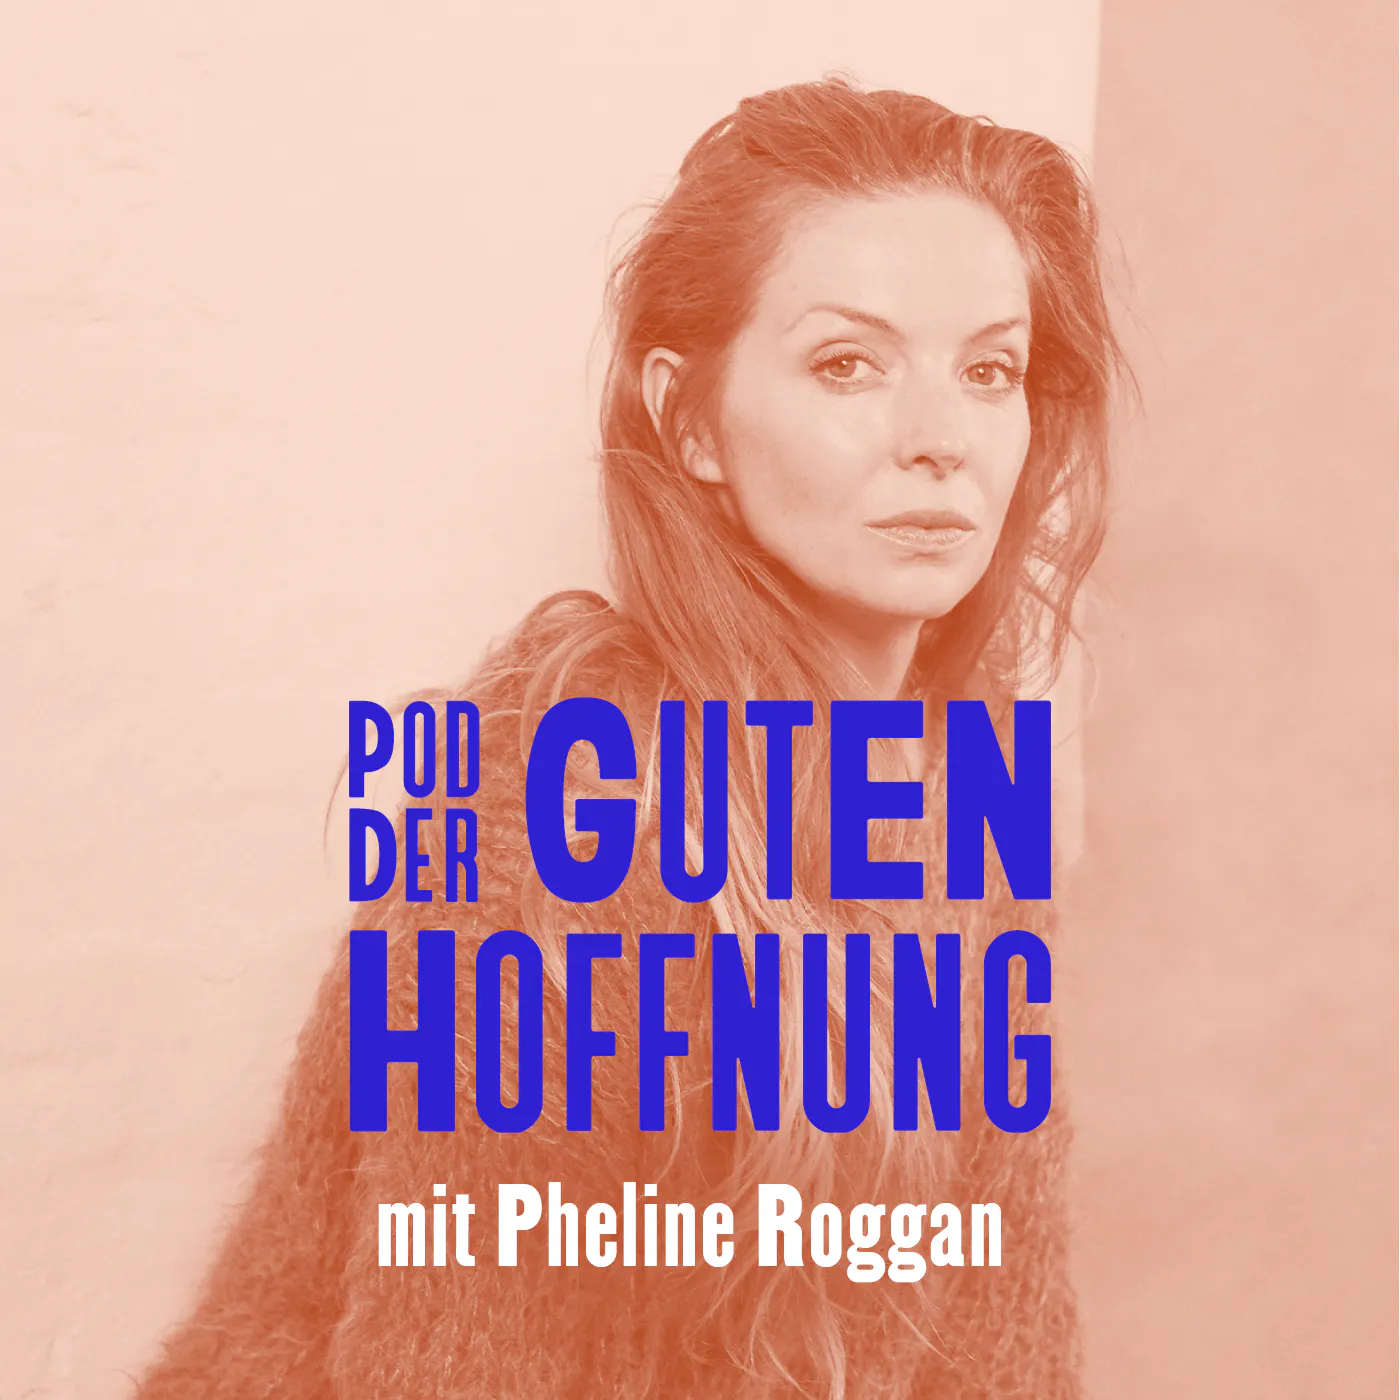 Schauspielerin Pheline Roggan im Pod der guten Hoffnung